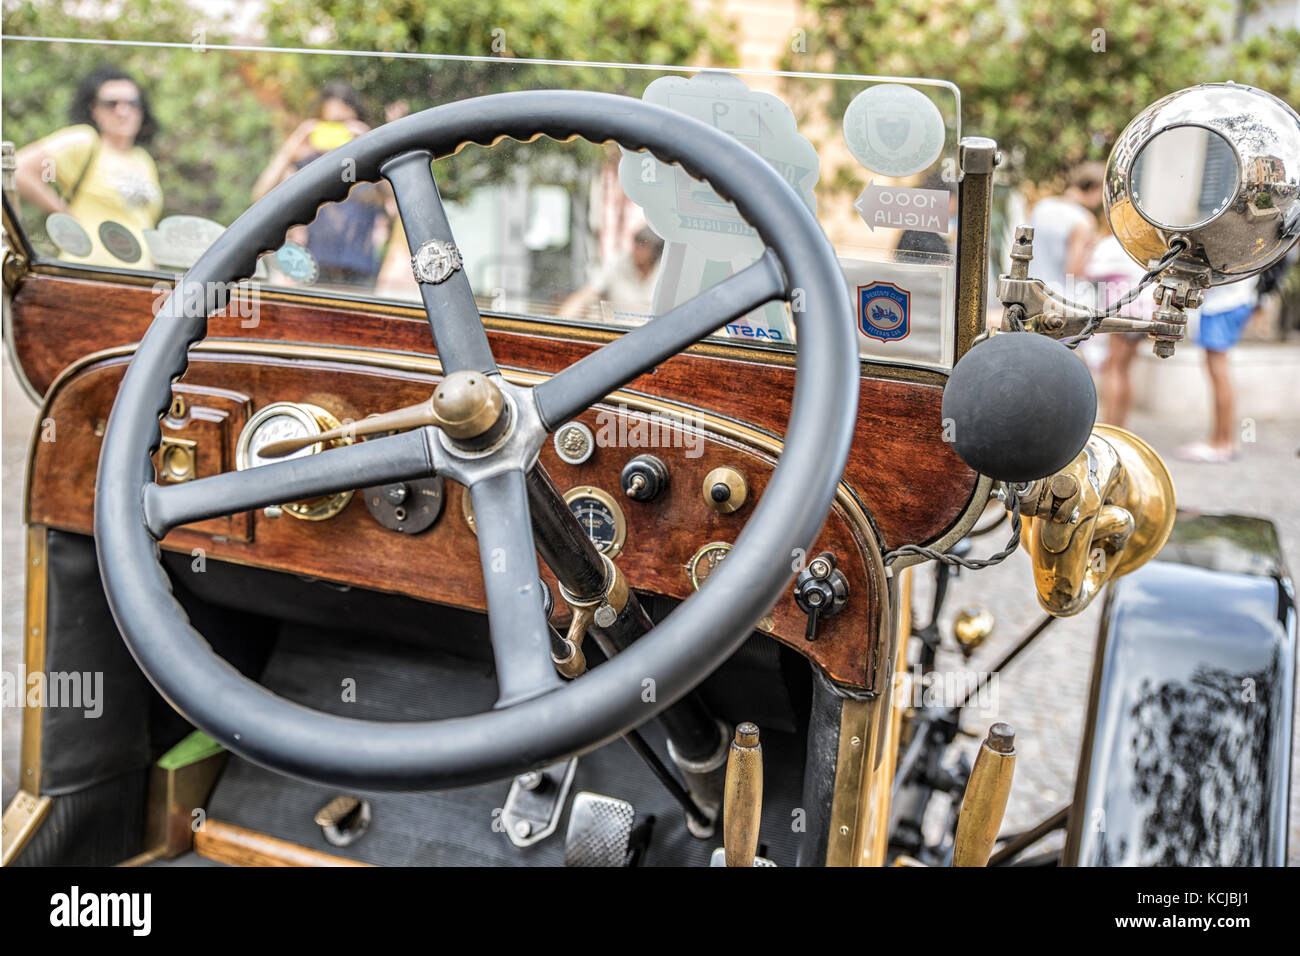 Italia Liguria Celle Ligure antique car reunión detalle de volante e interior de coches antiguos Foto de stock